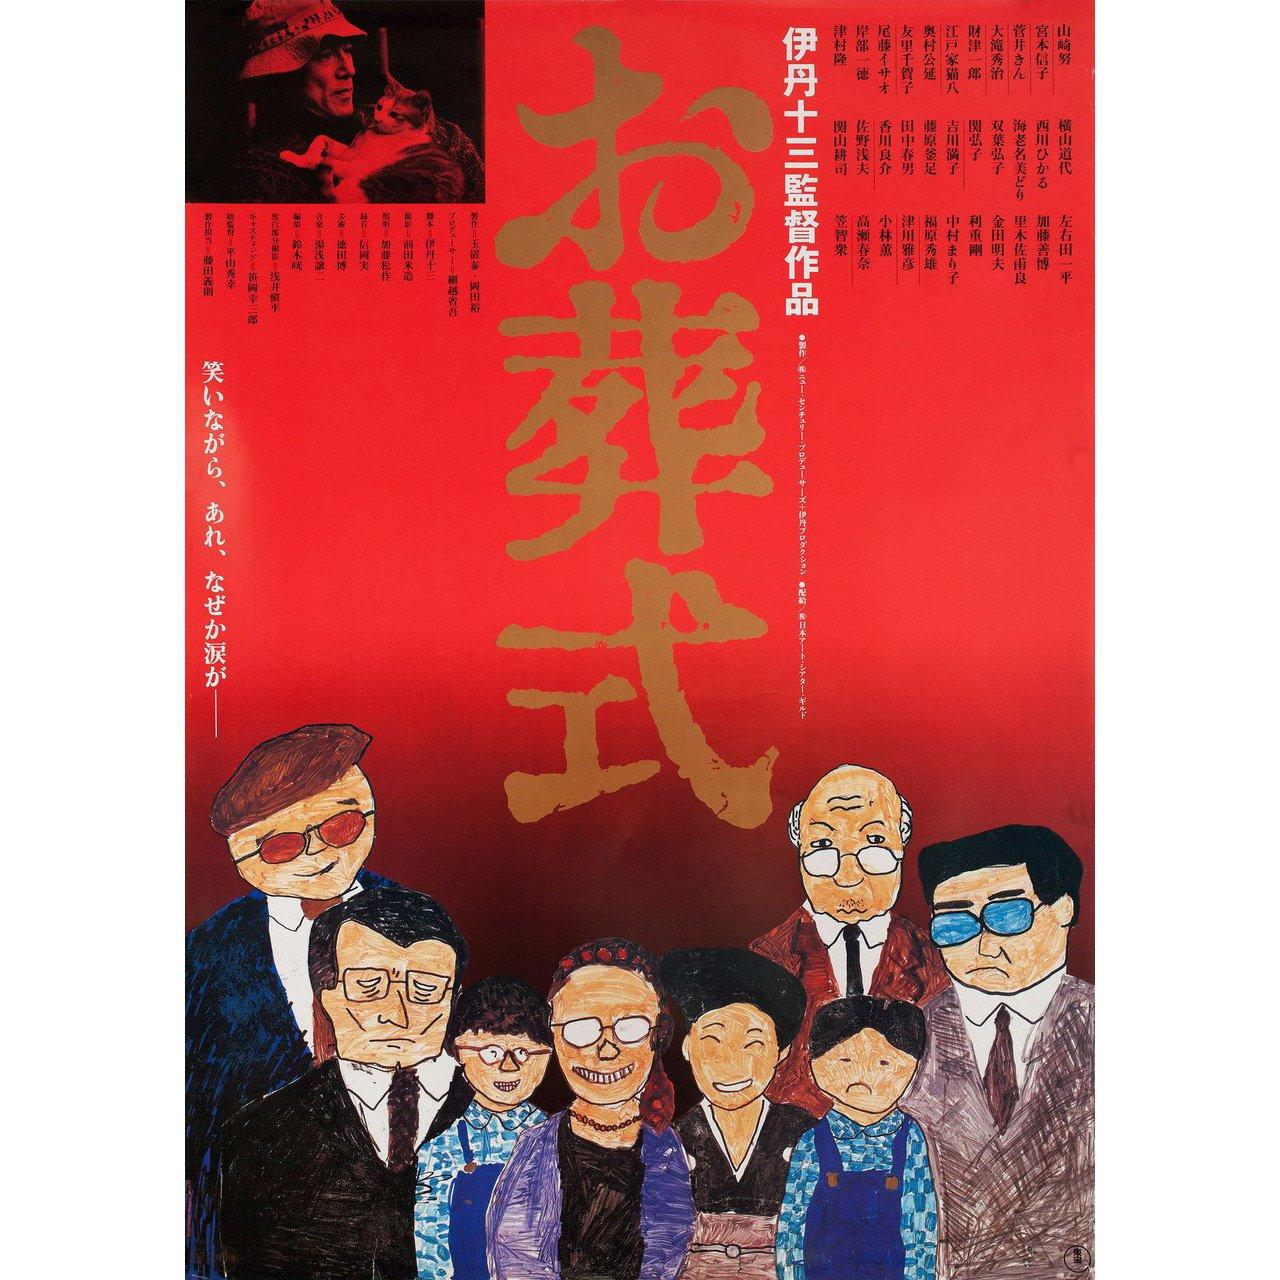 Affiche originale B2 japonaise de 1984 par Manpei Ikeuchi pour le film The Funeral réalisé par Juzo Itami avec Tsutomu Yamazaki / Nobuko Miyamoto / Kin Sugai / Hideji Otaki. Très bon état, roulé. Veuillez noter que la taille est indiquée en pouces